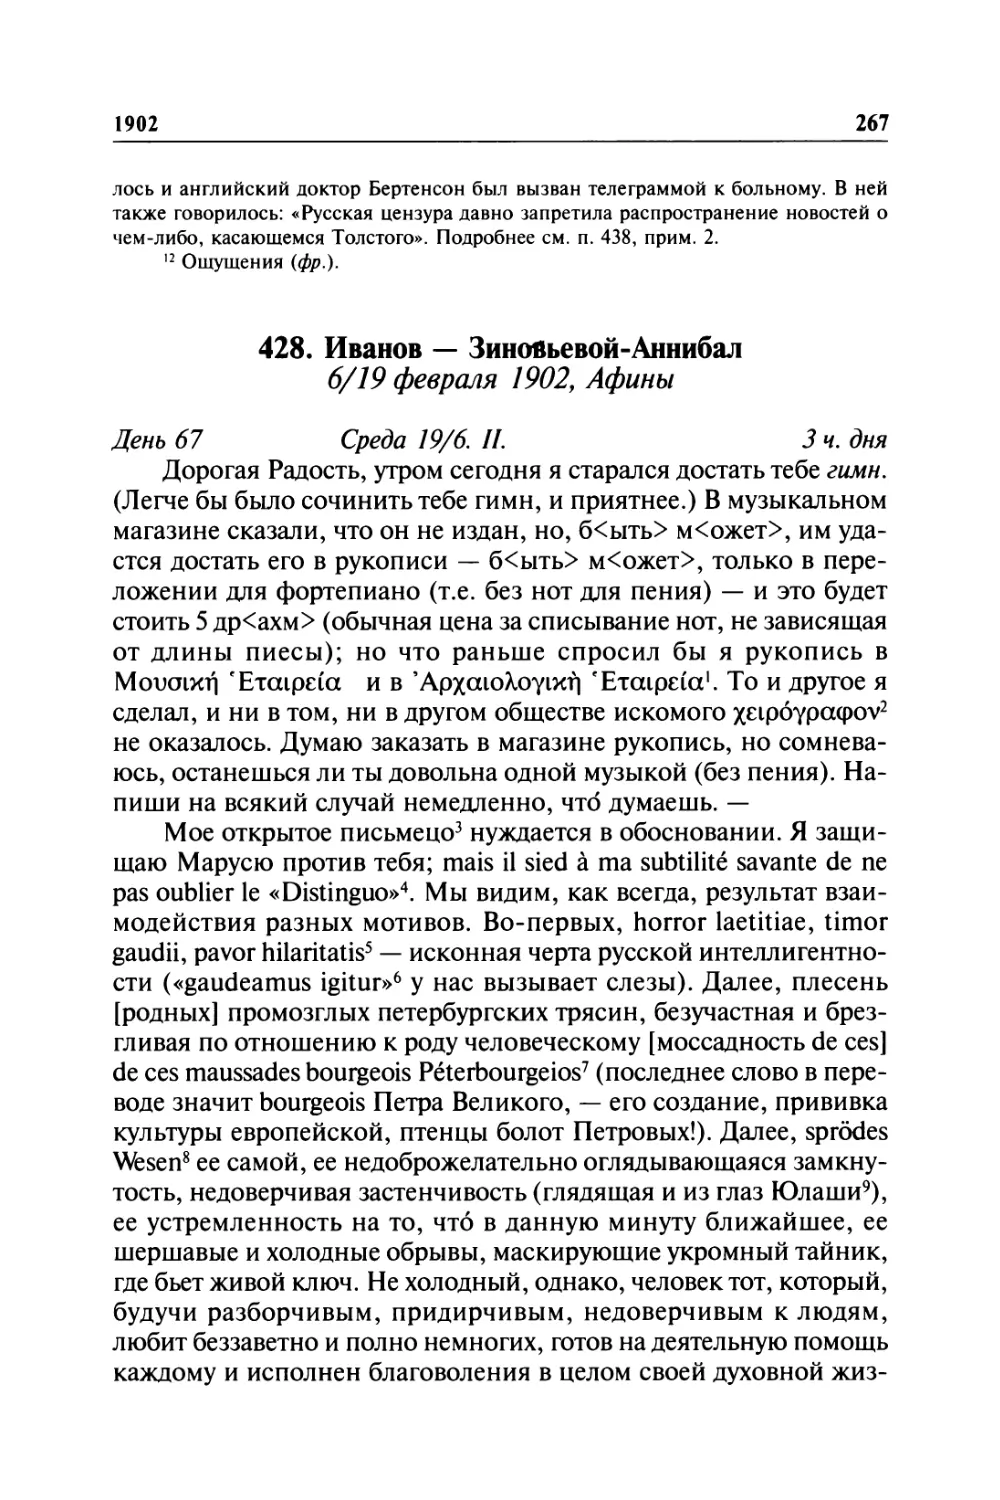 428. Иванов — Зиновьевой-Аннибал. 6/19 февраля 1902, Афины